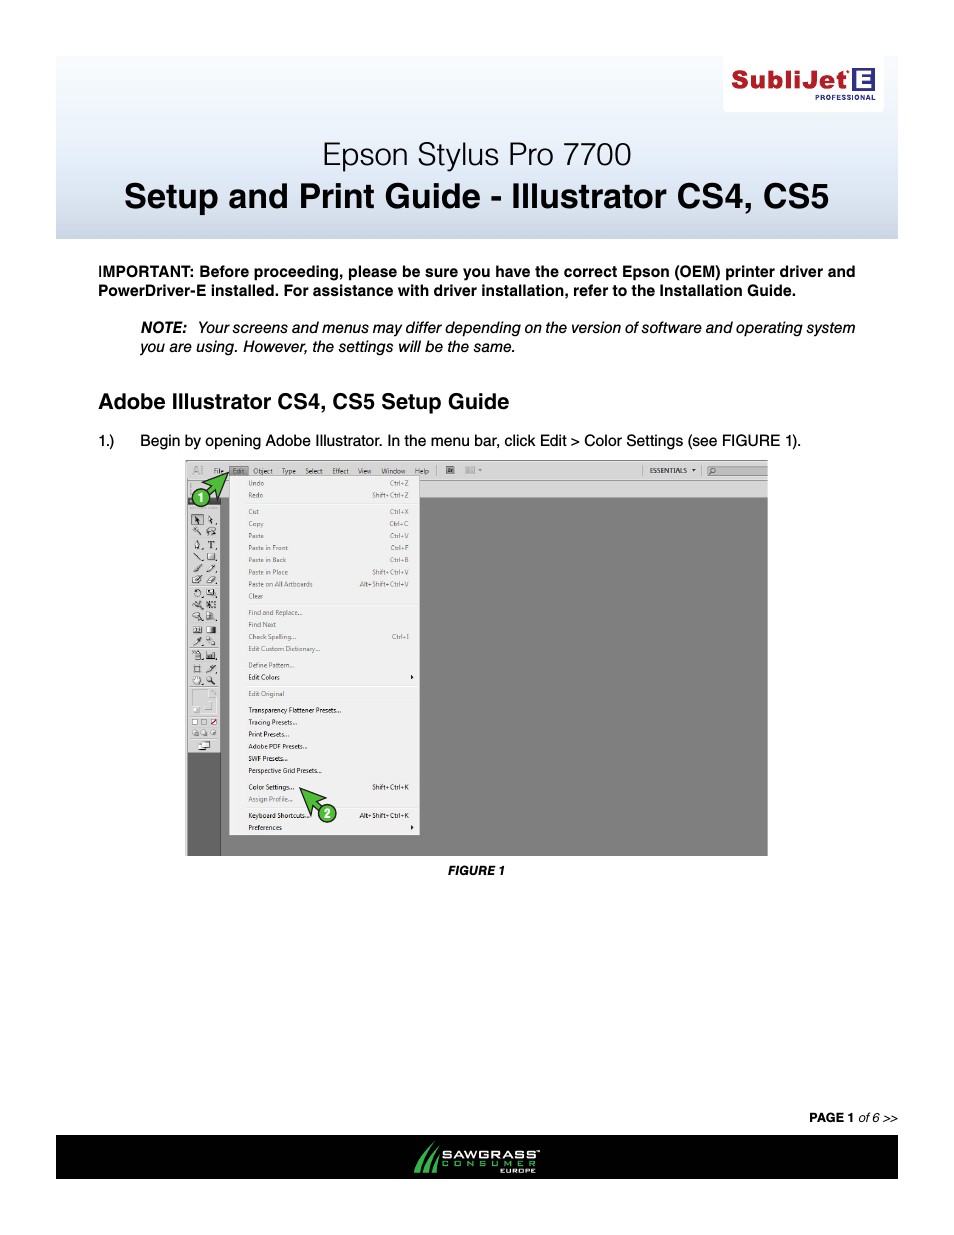 SubliJet E Epson Stylus Pro 7700 (Windows Power Driver Setup): Print & Setup Guide Illustrator CS4 - CS5